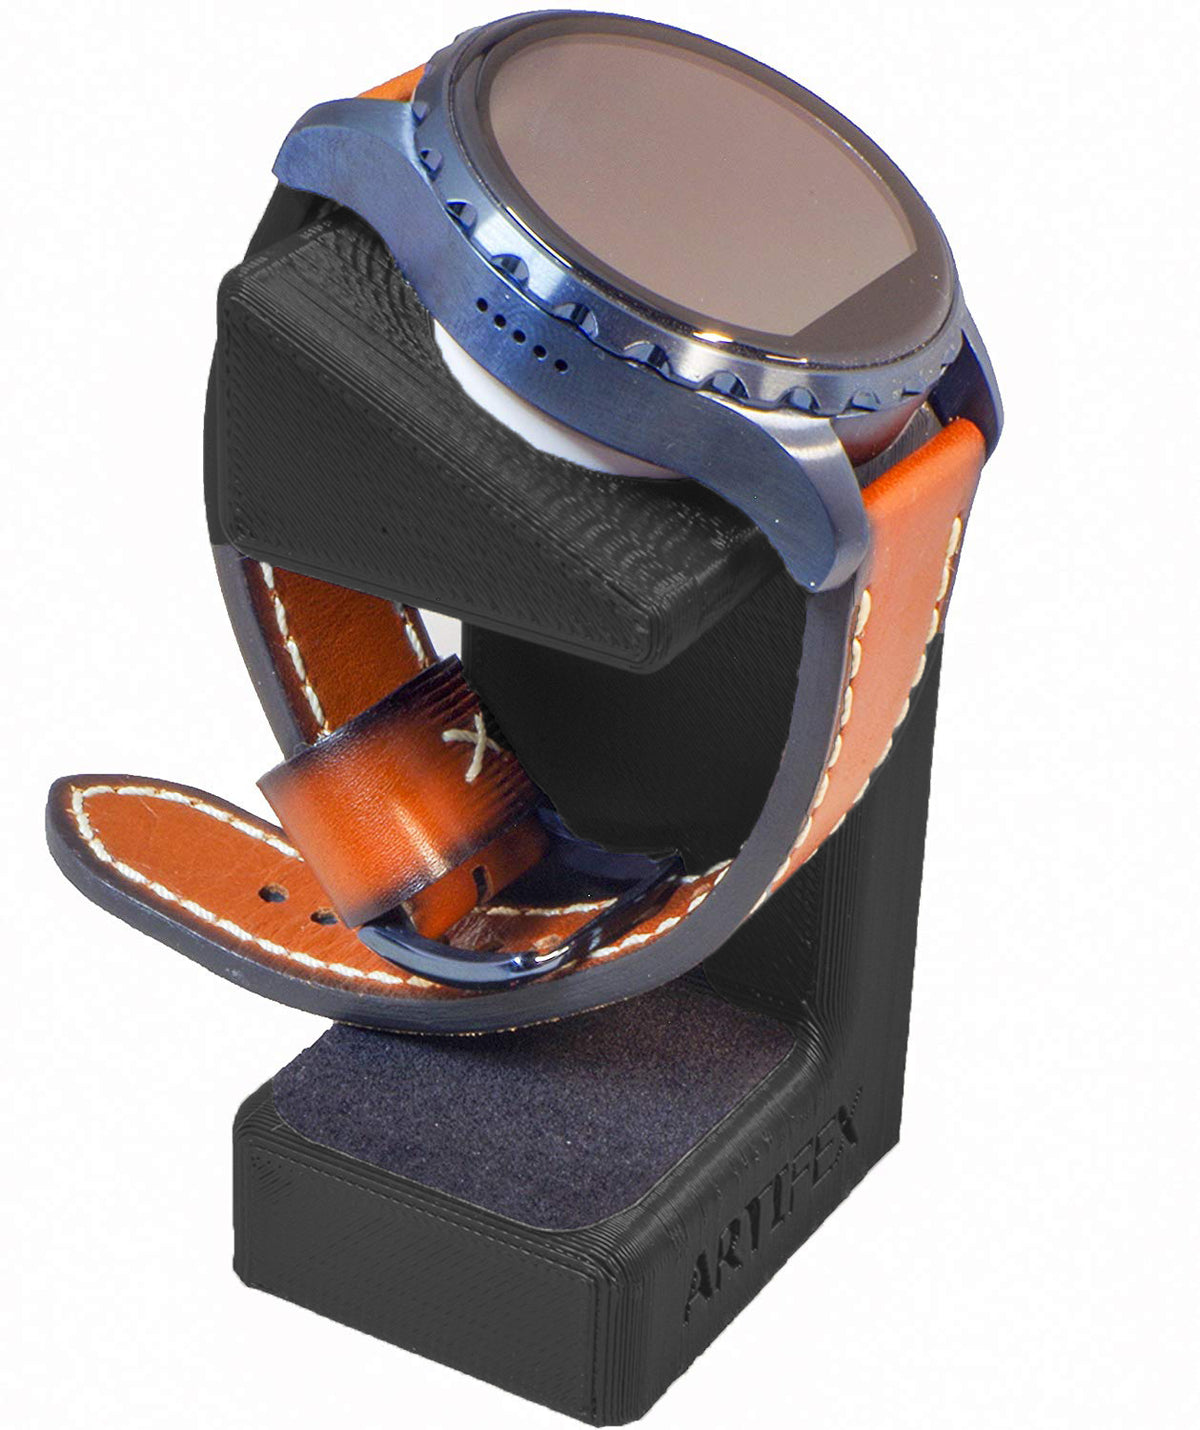 Fossil Q Marshal/ Gen3 / MK Bradshaw/ Skagen/ Emporio Armani/ Diesel/ Smartwatch by Artifex Design (Wireless charger) - Artifex Design 3D